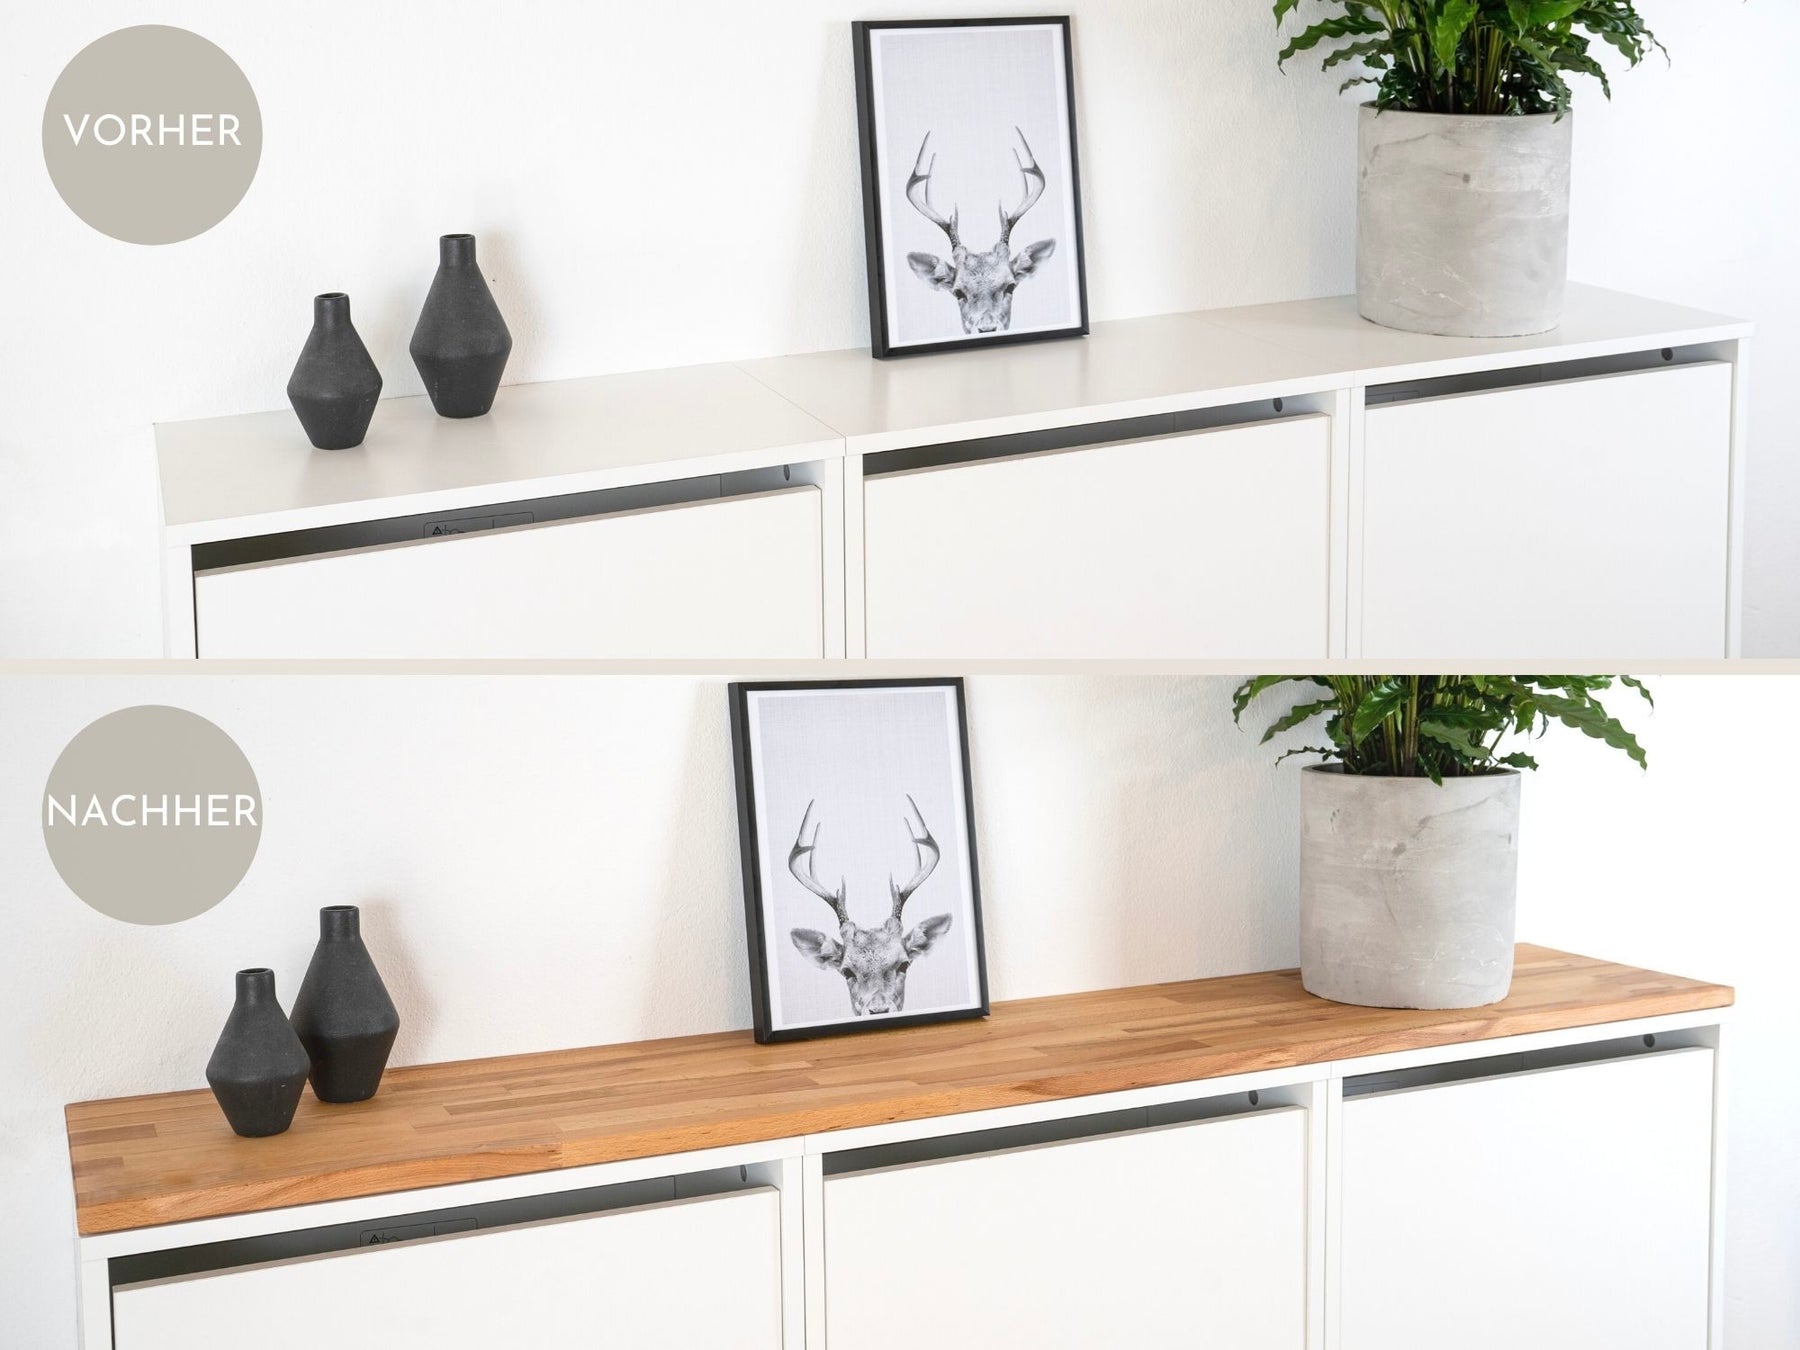 Ikea Bissa 3 mit Holzplatte in Kernbuche Vorher/Nachher Vergleich im Detail